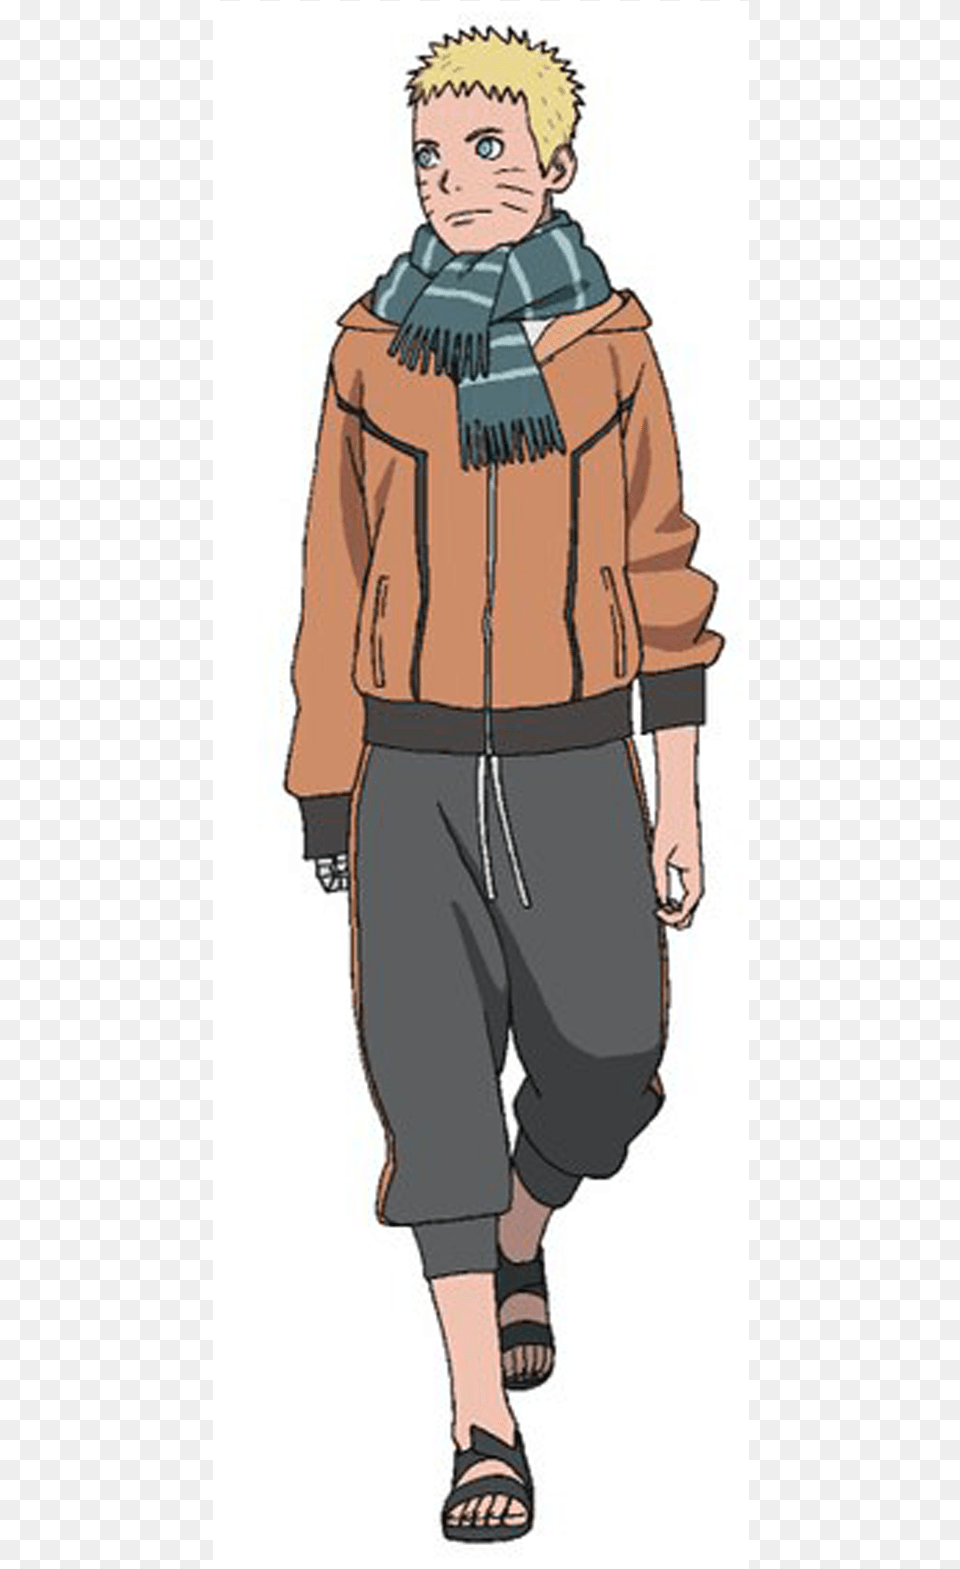 Uzumaki Naruto Alternative Scarf Naruto Naruto Last Naruto Outfit, Clothing, Coat, Adult, Person Png Image